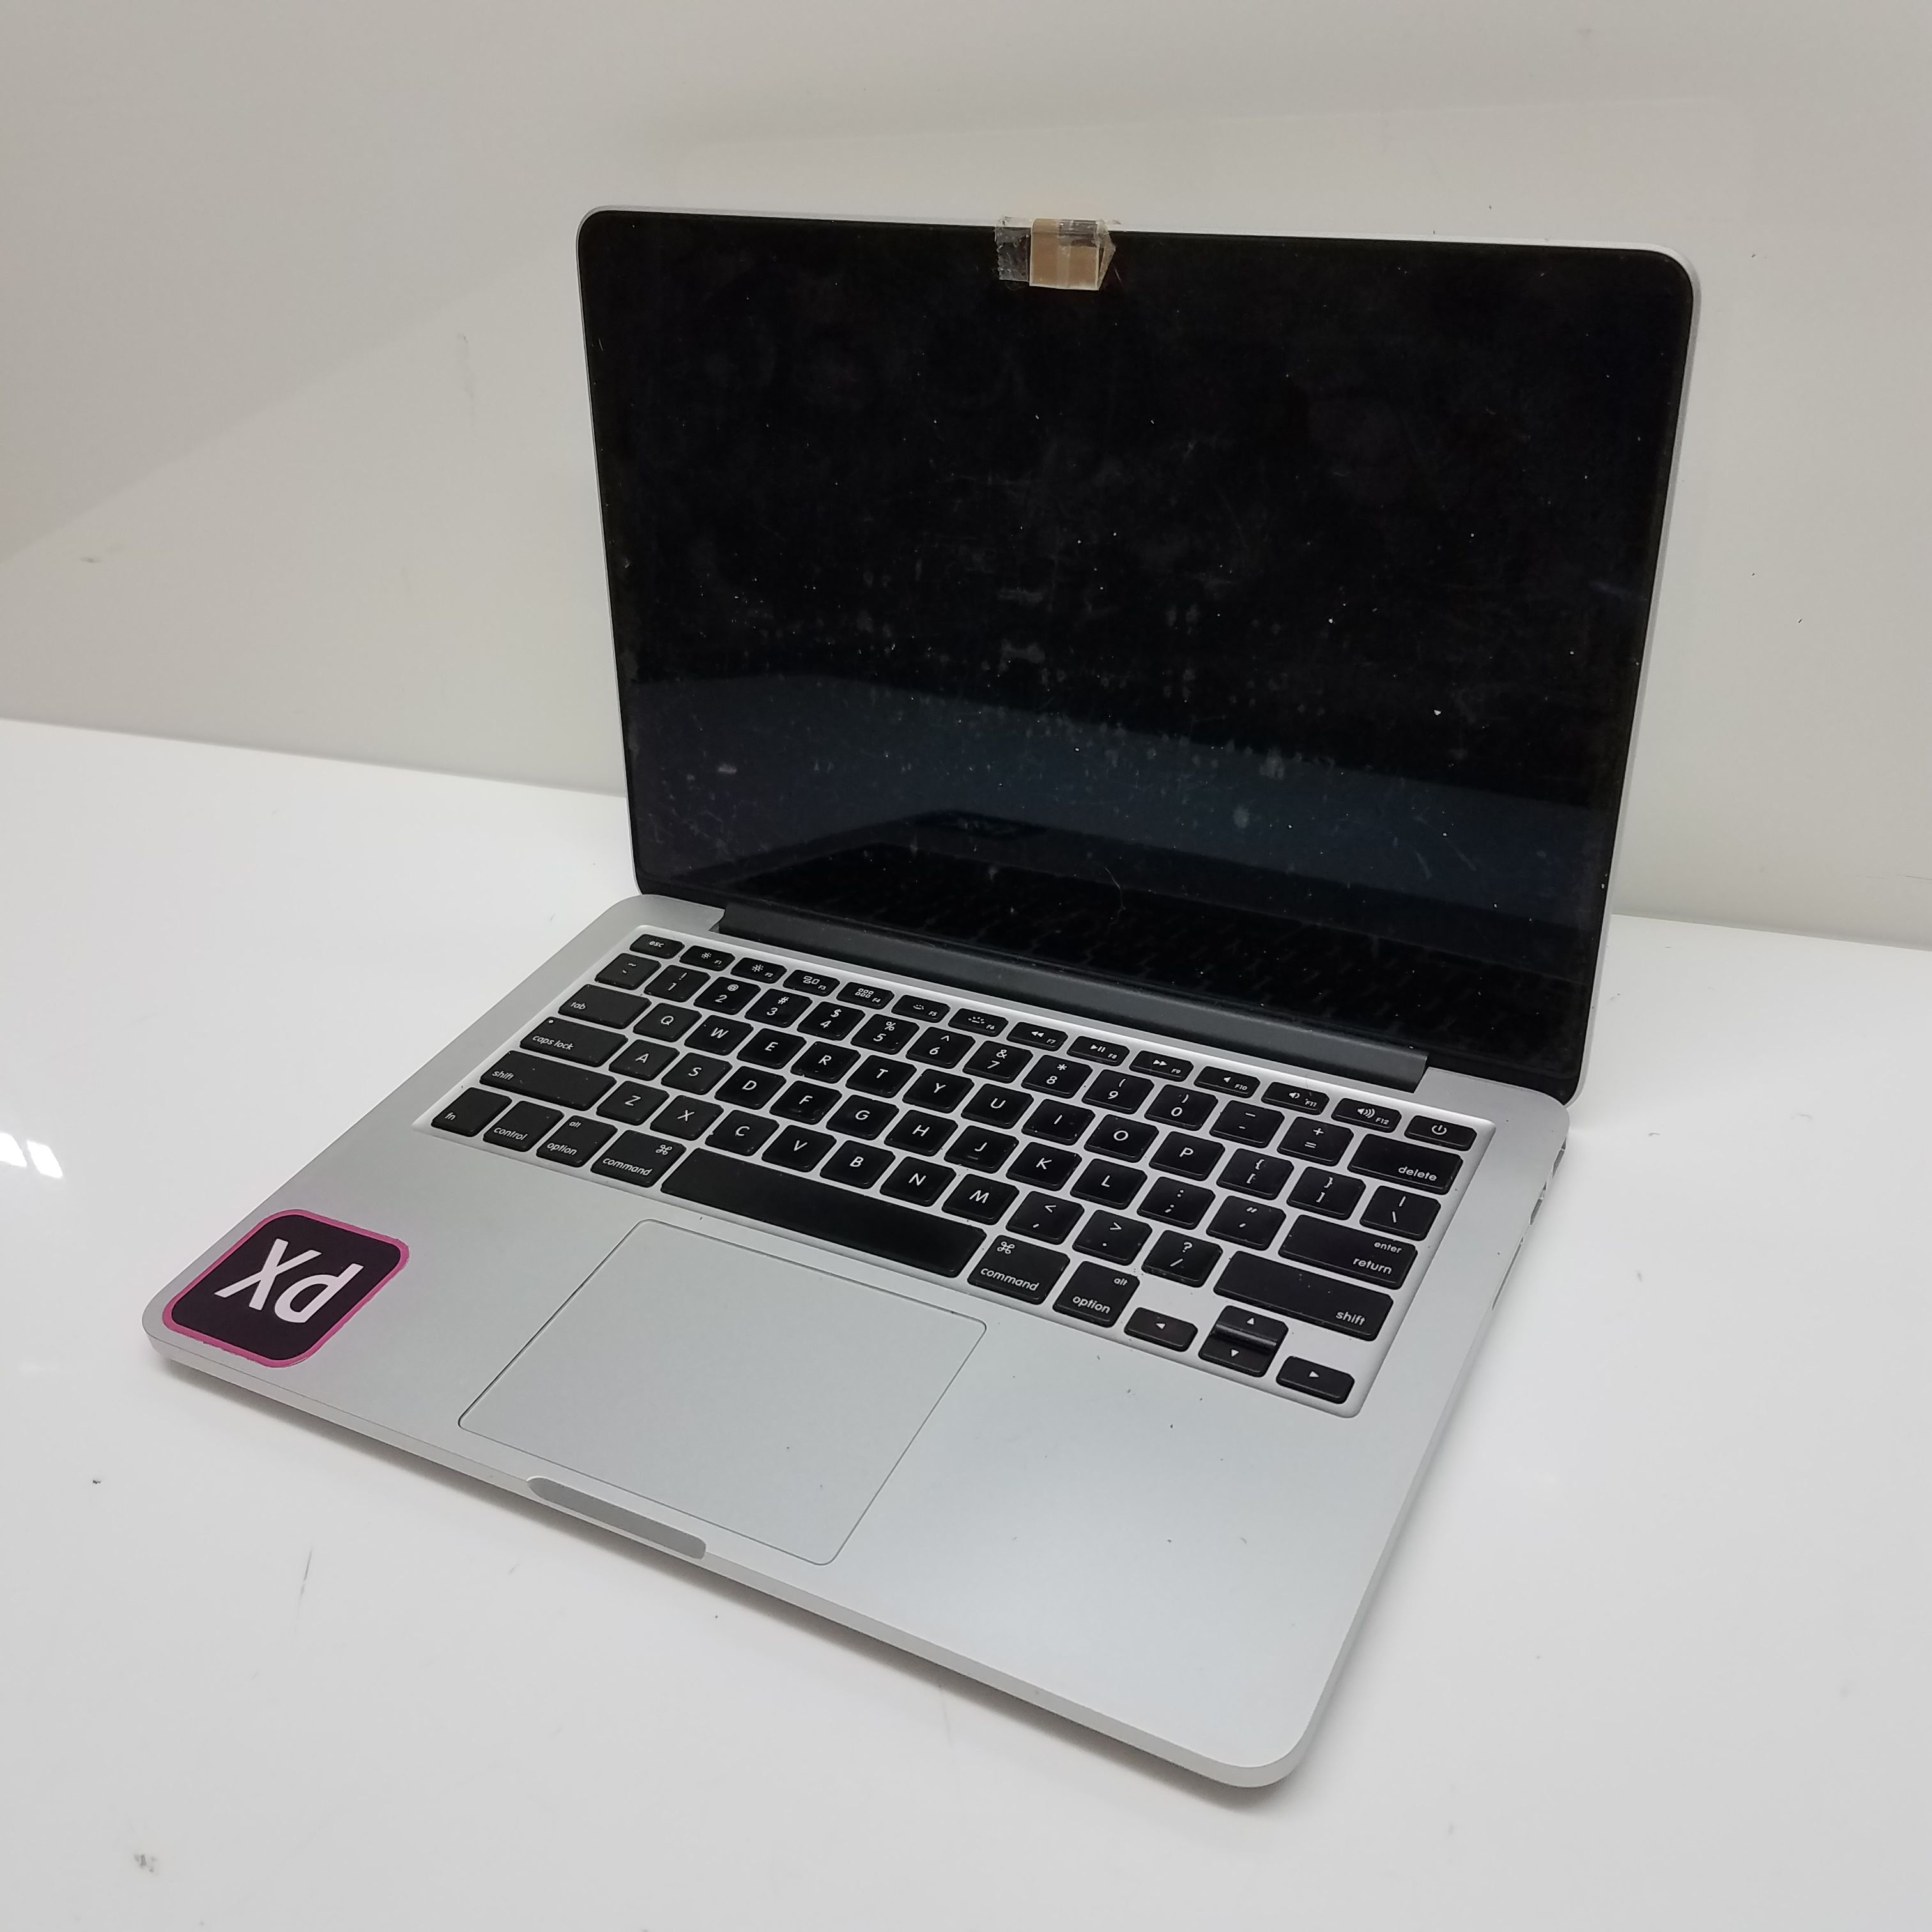 Buy the 2015 MacBook Pro 13in Laptop Intel i5-5257U CPU 8GB RAM 